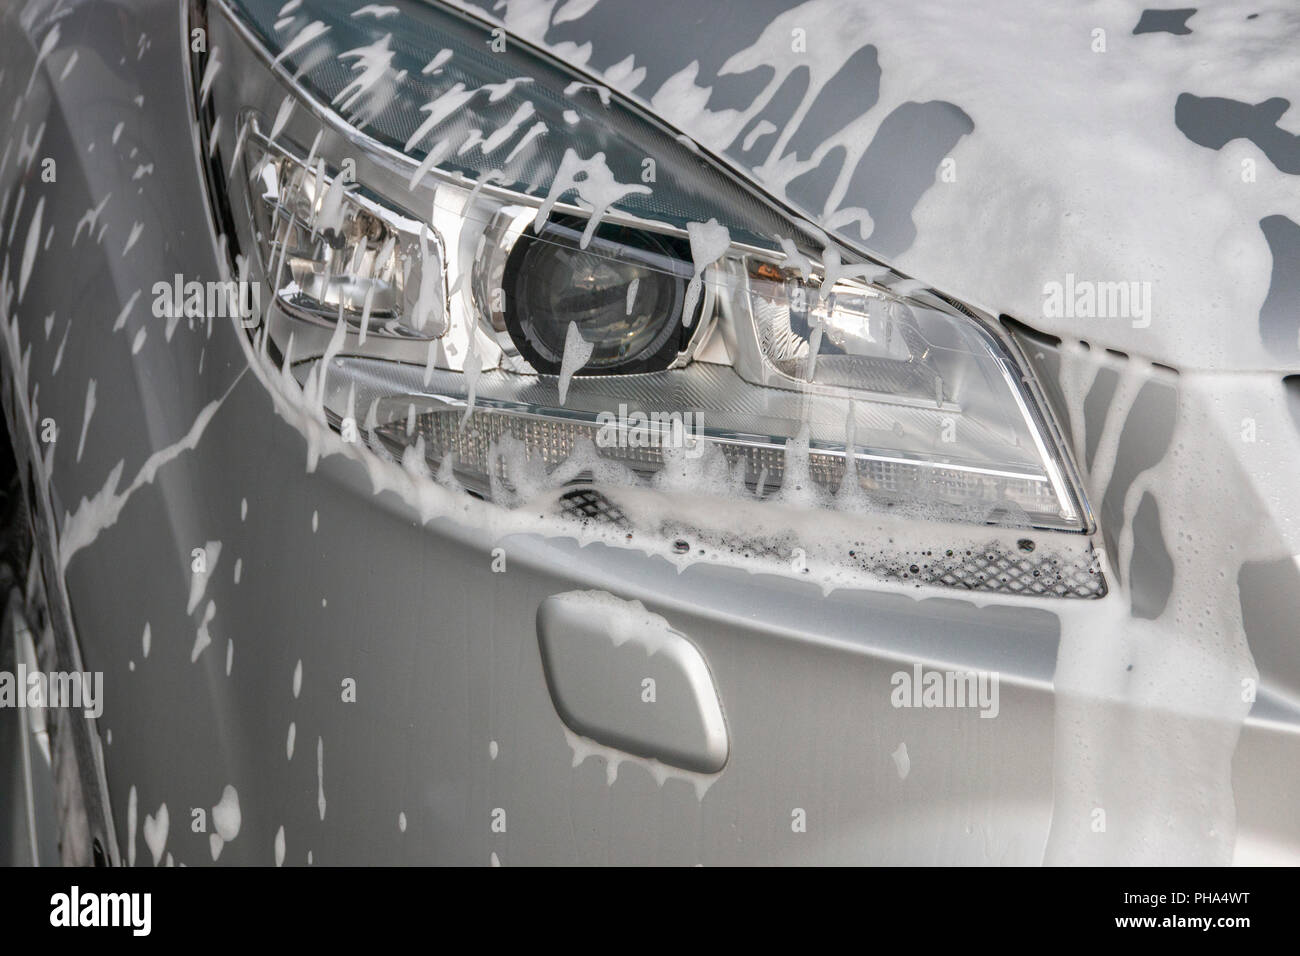 Una chiusura di schiuma di sapone sul lato sinistro della luce principale di un nastro in auto Foto Stock